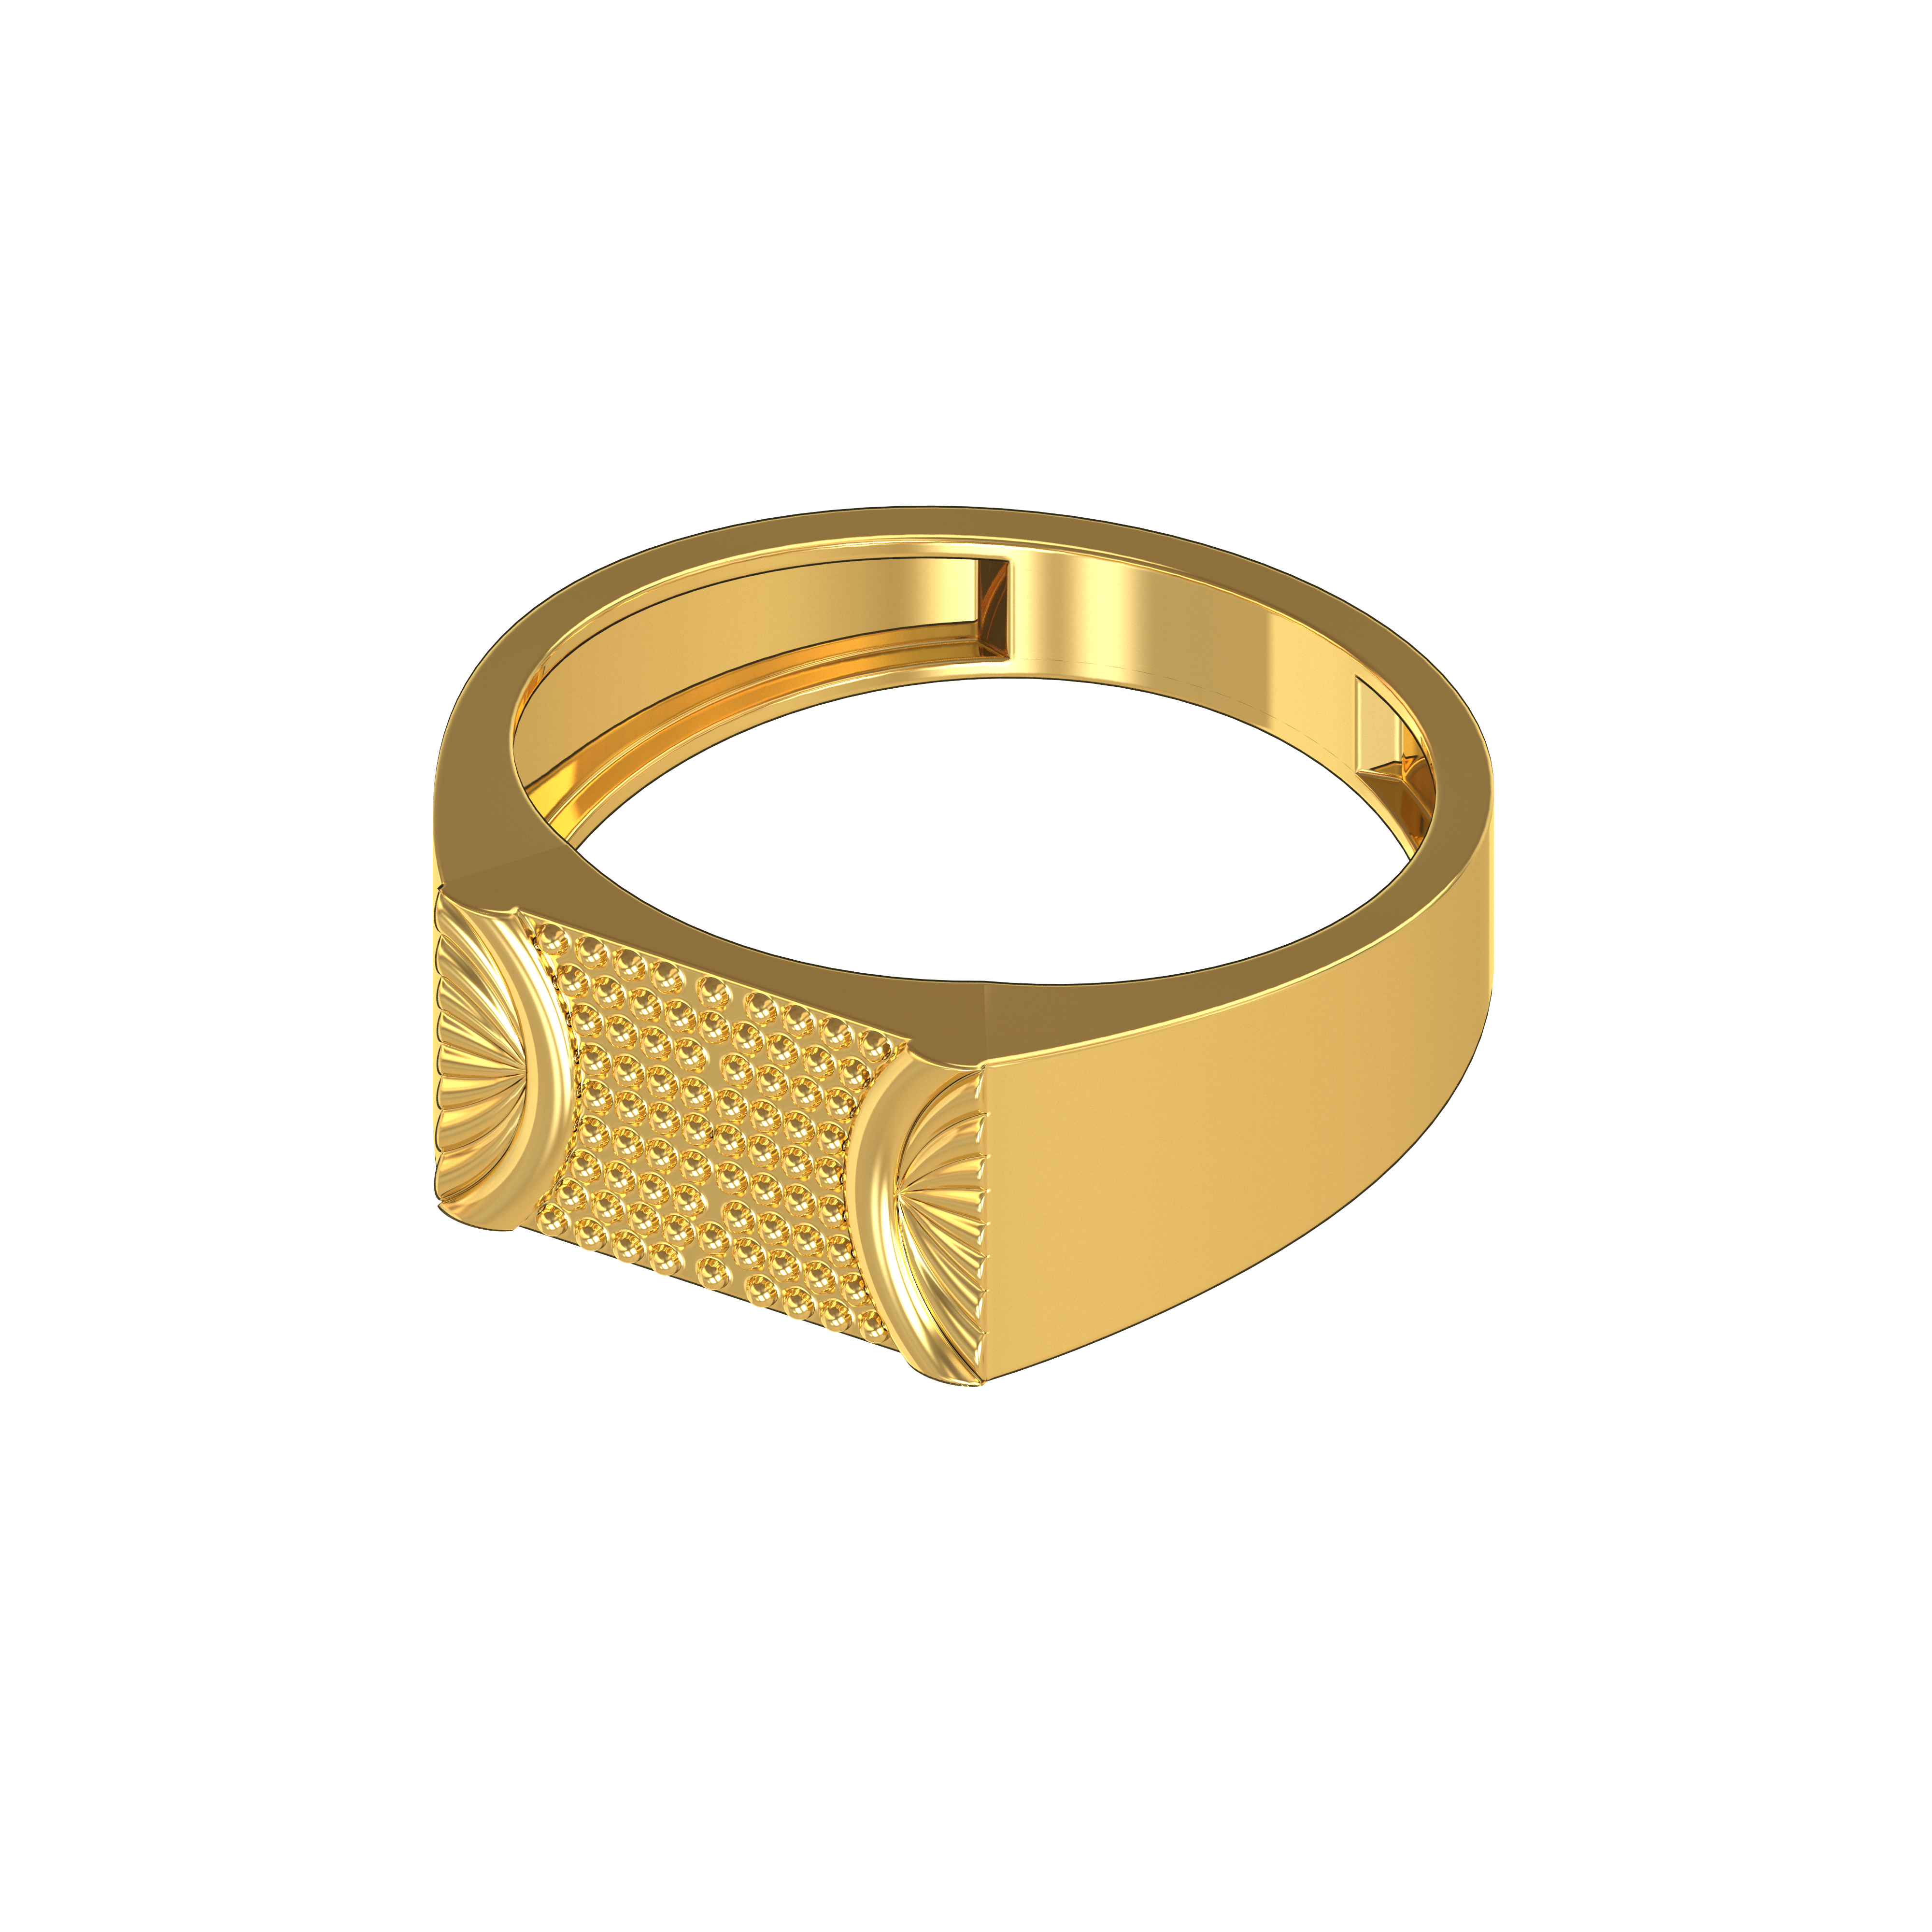 Modern engagement gold ring design ideas for girls 2021 - YouTube